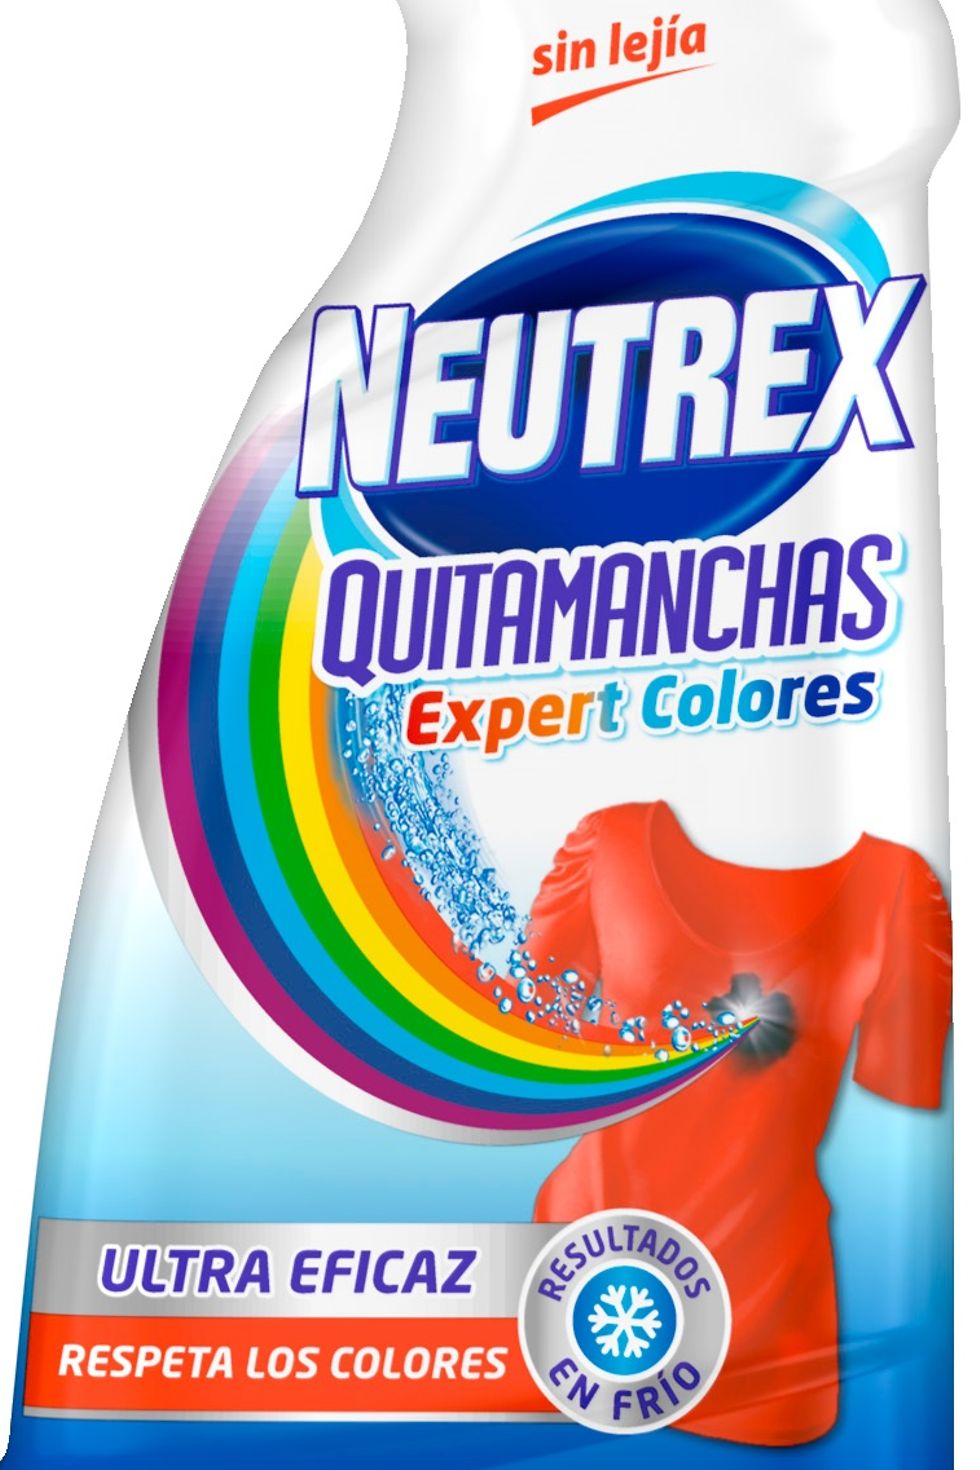 Neutrex Quitamanchas Expert Colores